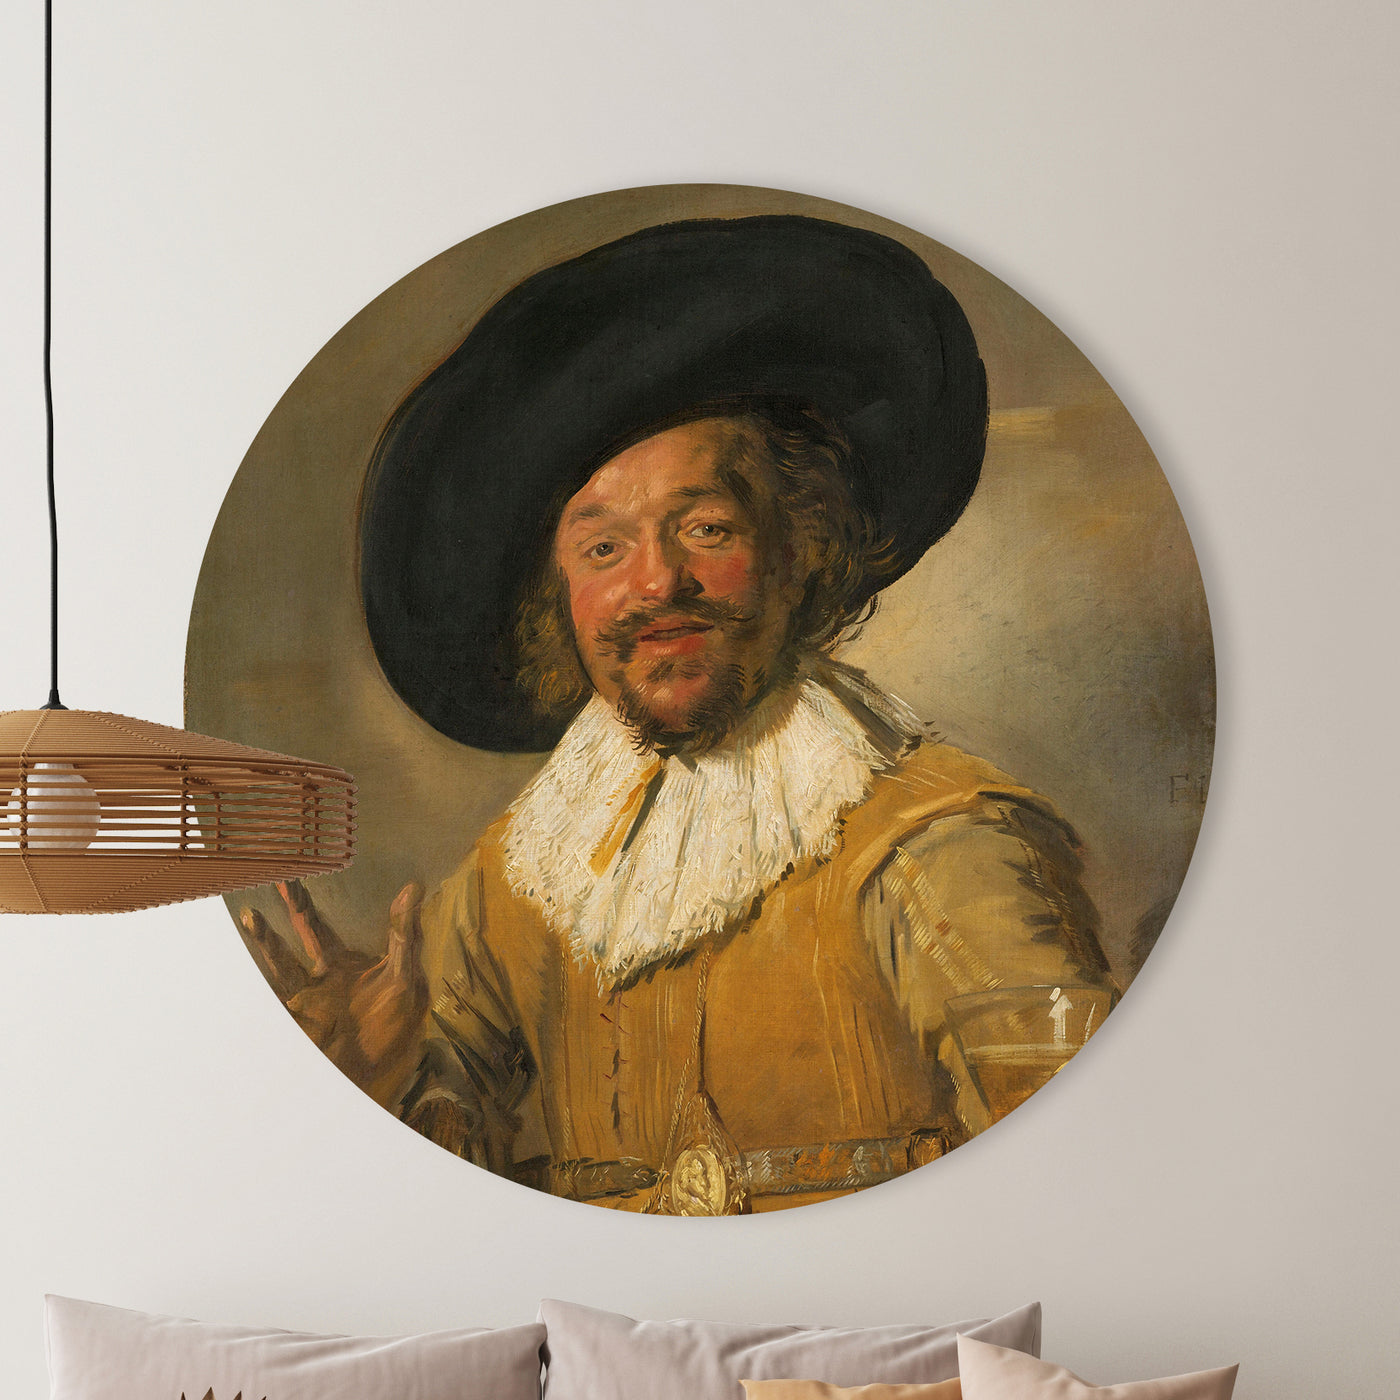 De vrolijke drinker - Frans Hals